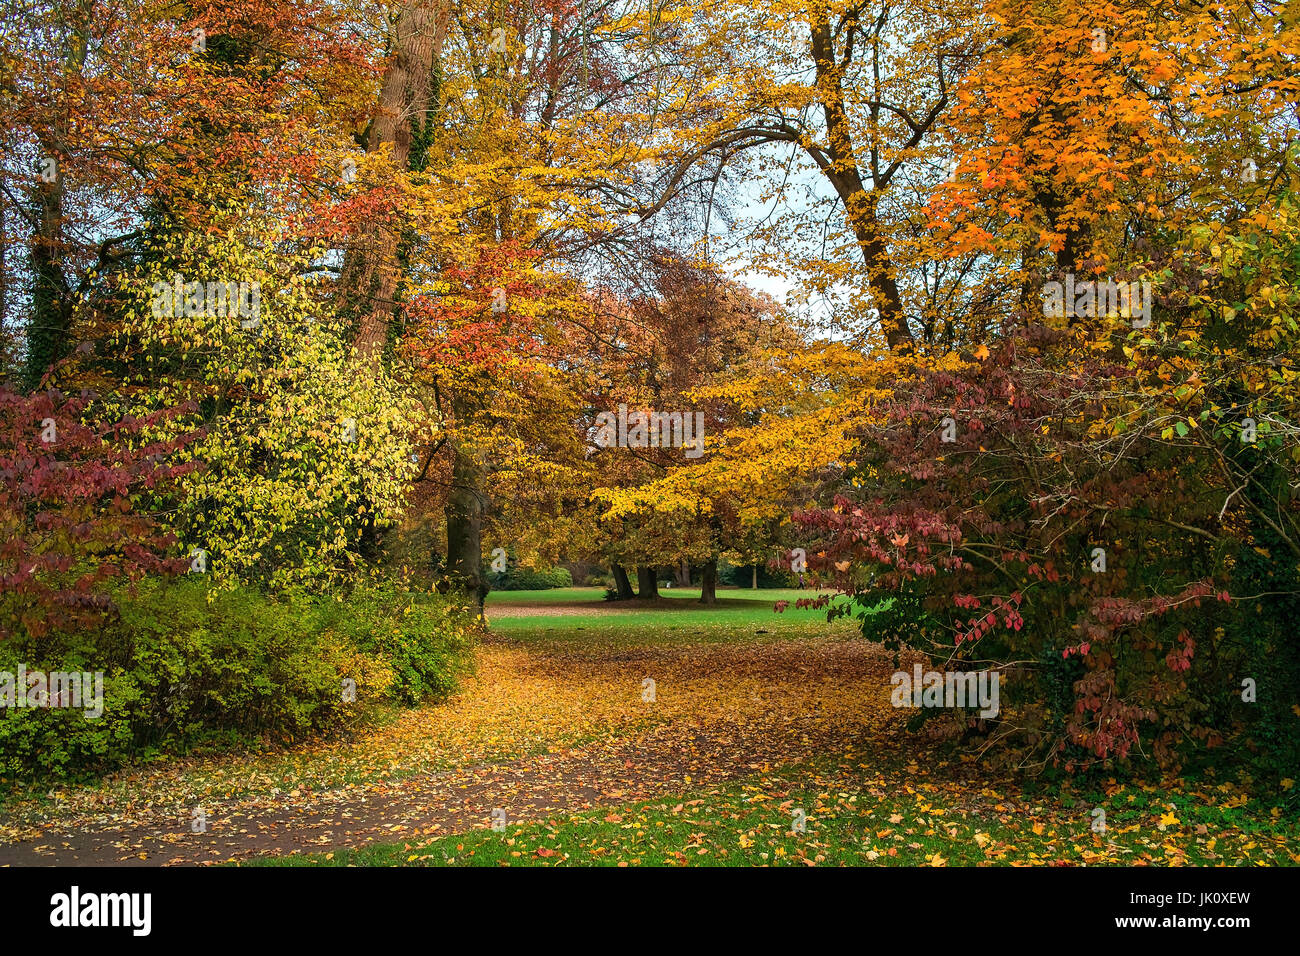 sehr unterschiedlich gefärbte Herbstlaub hinten oben und Sträucher im Park zeigt nach einer kalten Nacht im Herbst eine schnell vorübergehende Pracht, krassen unterschi Stockfoto